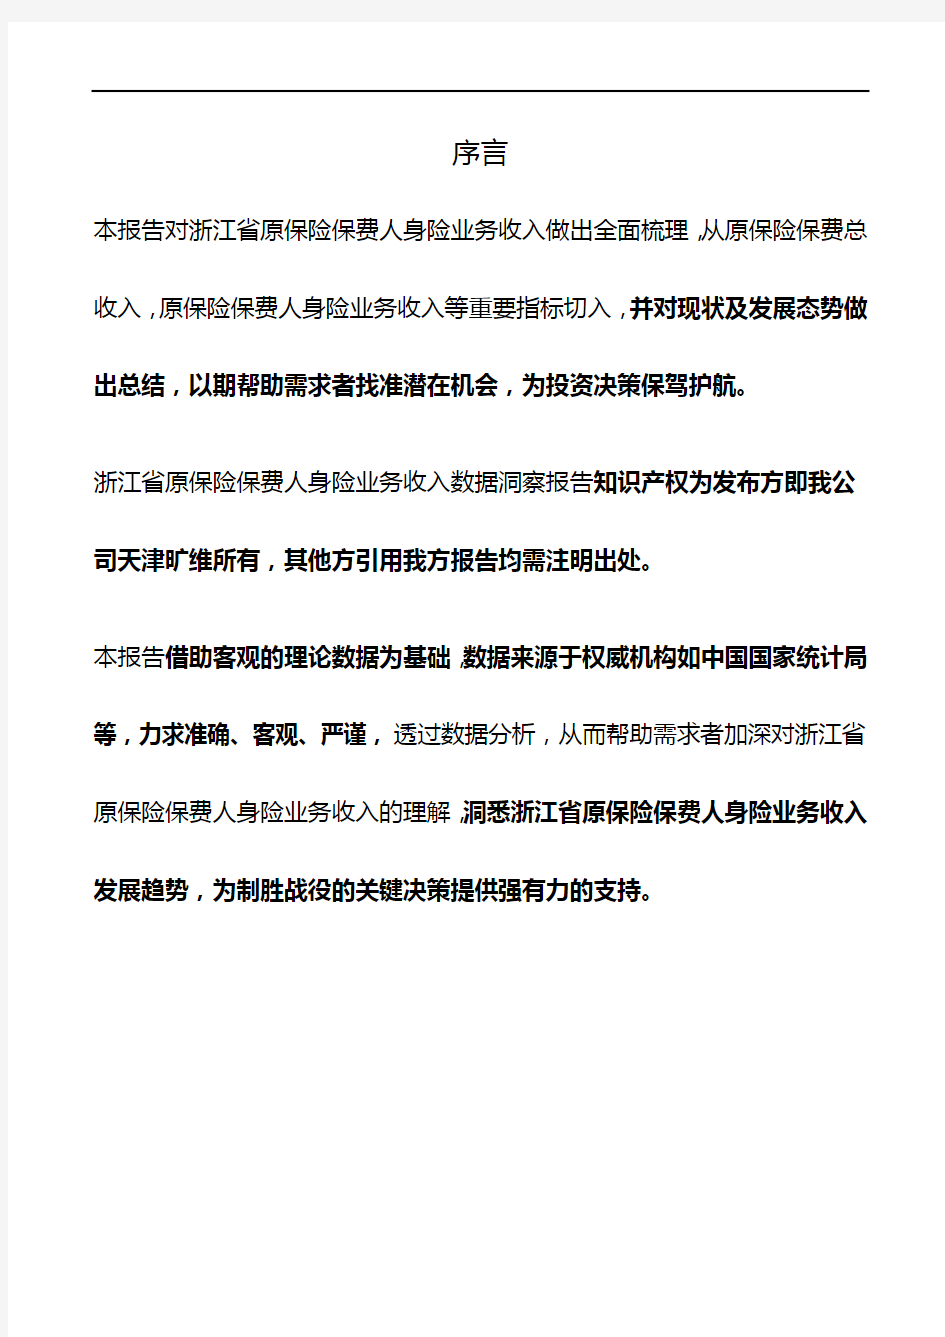 浙江省原保险保费人身险业务收入3年数据洞察报告2019版